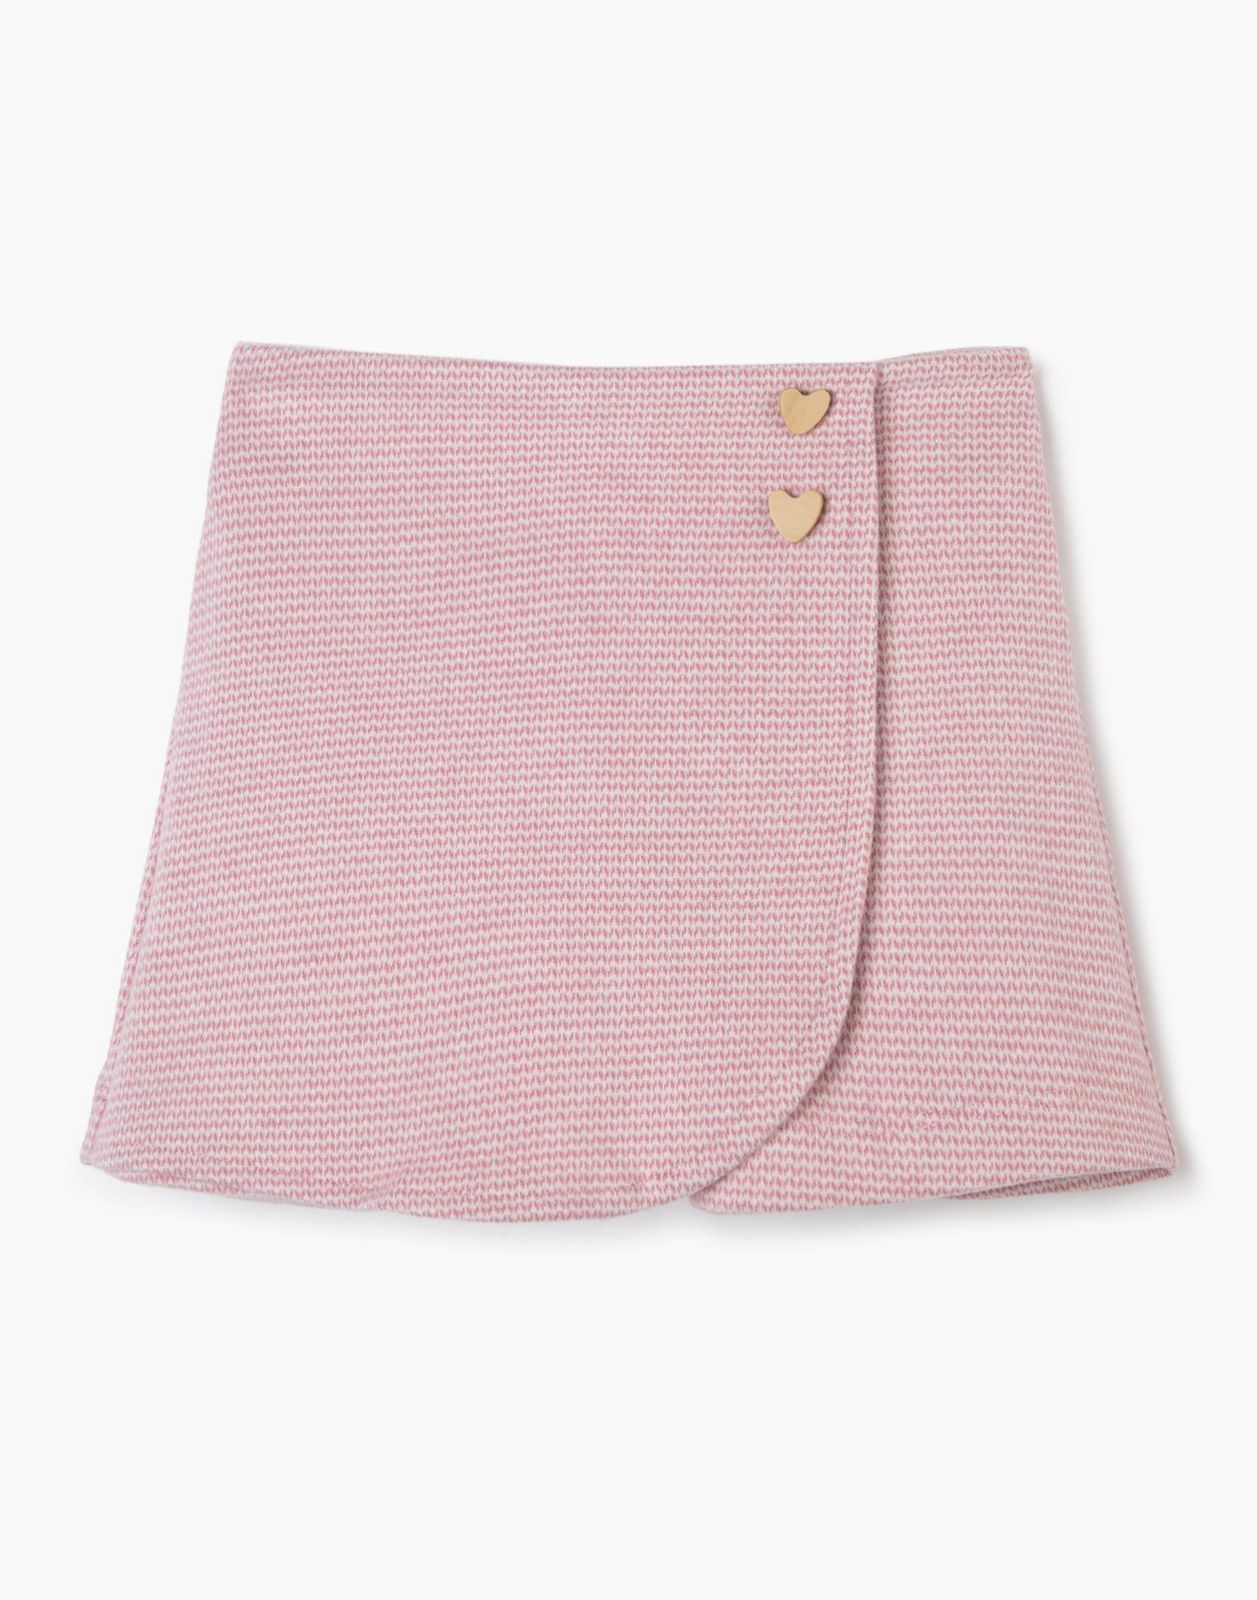 Юбка-шорты детская Gloria Jeans GSK017629, розовый/белый, 98 юбка шорты женская asics advantage белый